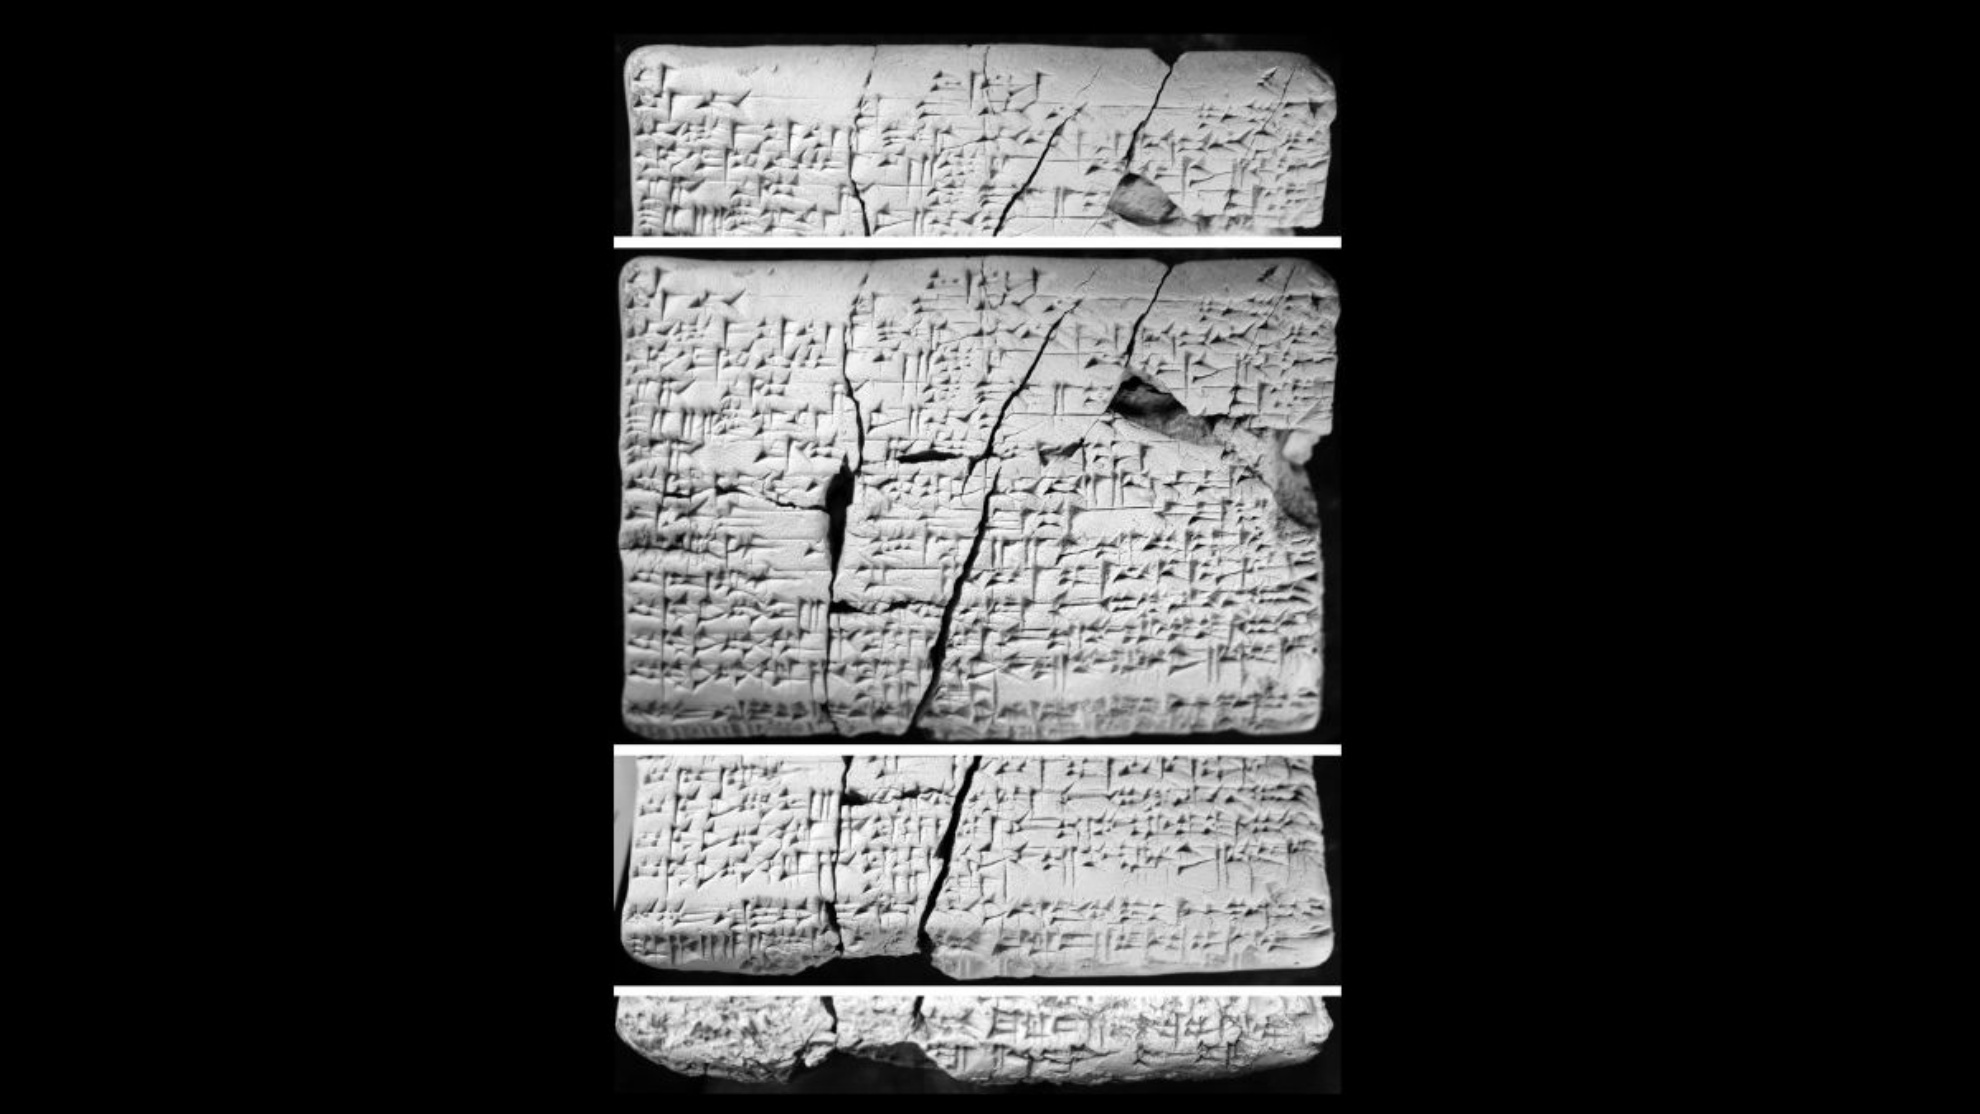 Tabletės buvo rastos Irake maždaug prieš 30 metų. Mokslininkai pradėjo juos tyrinėti 2016 m. ir atrado, kad juose yra akadų kalba „prarastos“ amoritų kalbos detalės.